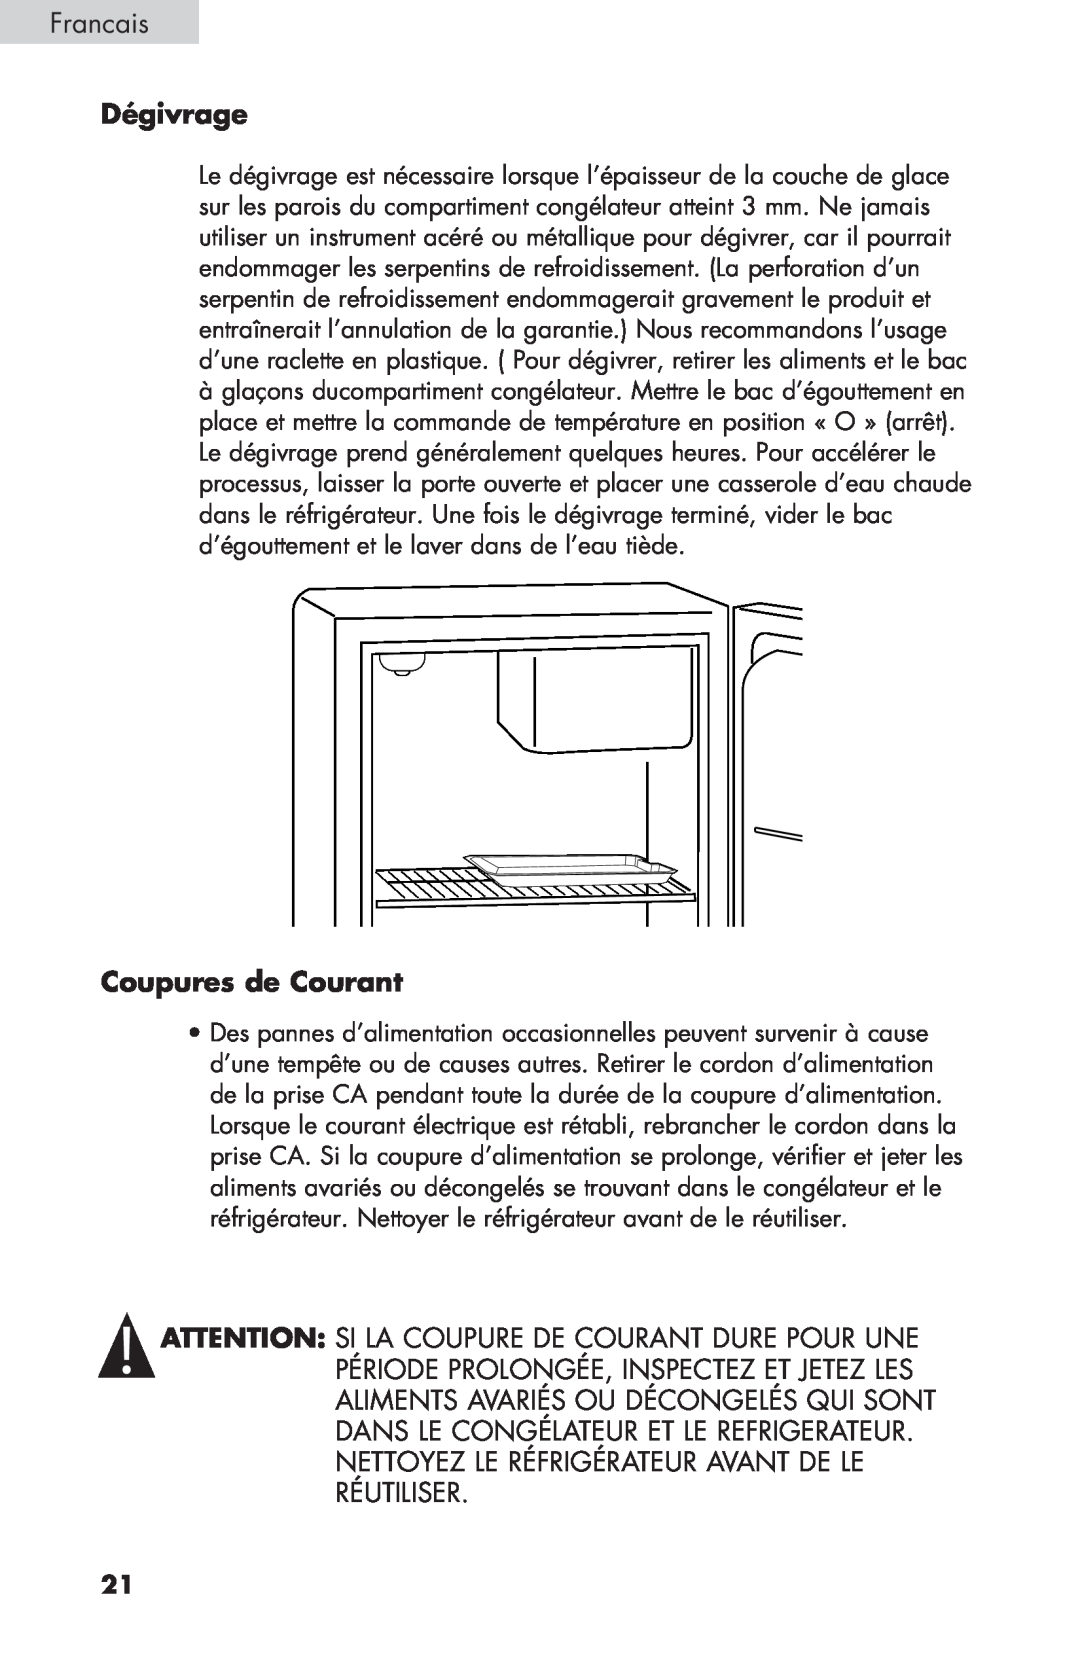 Haier BCF27B manual Dégivrage, Coupures de Courant, Francais 